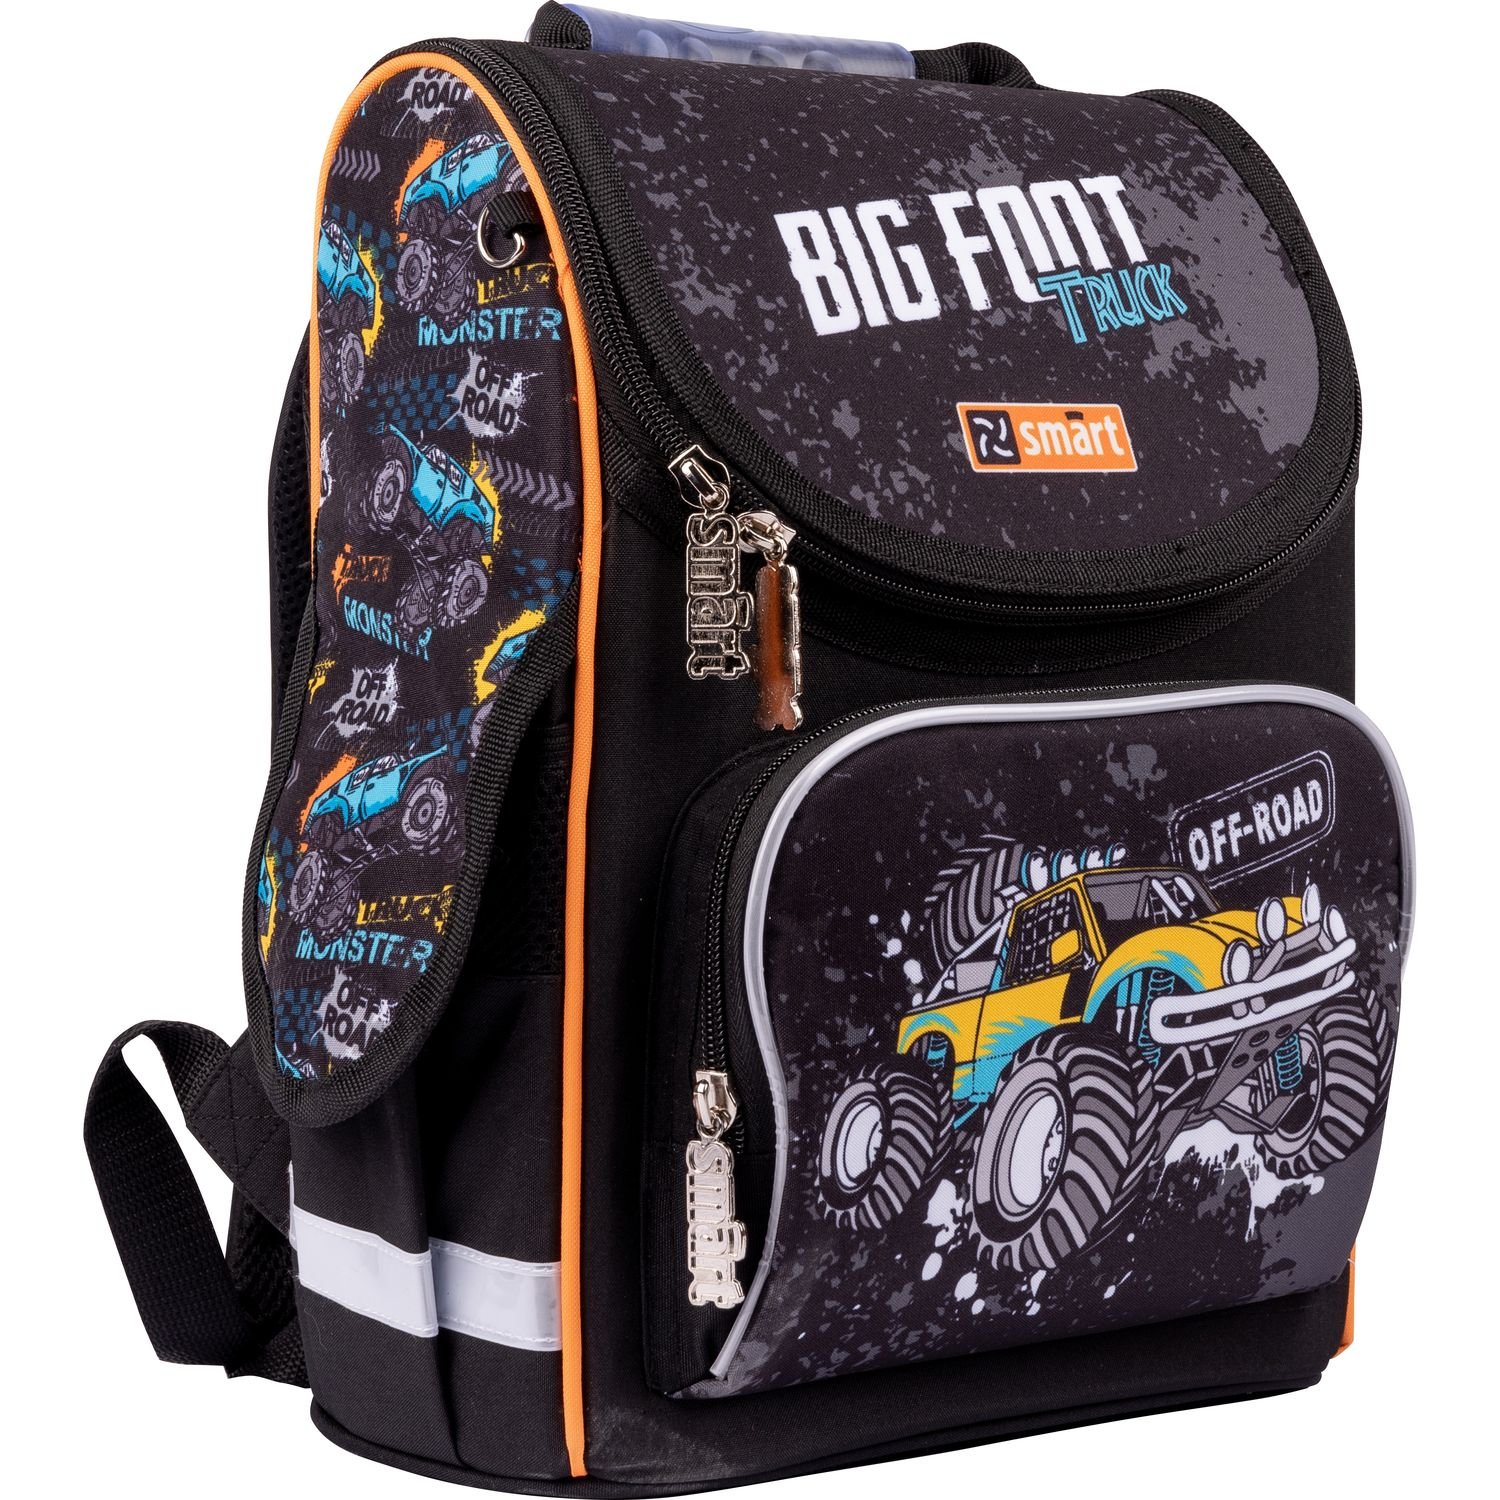 Рюкзак шкільний каркасний Smart PG-11 Big Foot, черный (559009) - фото 2